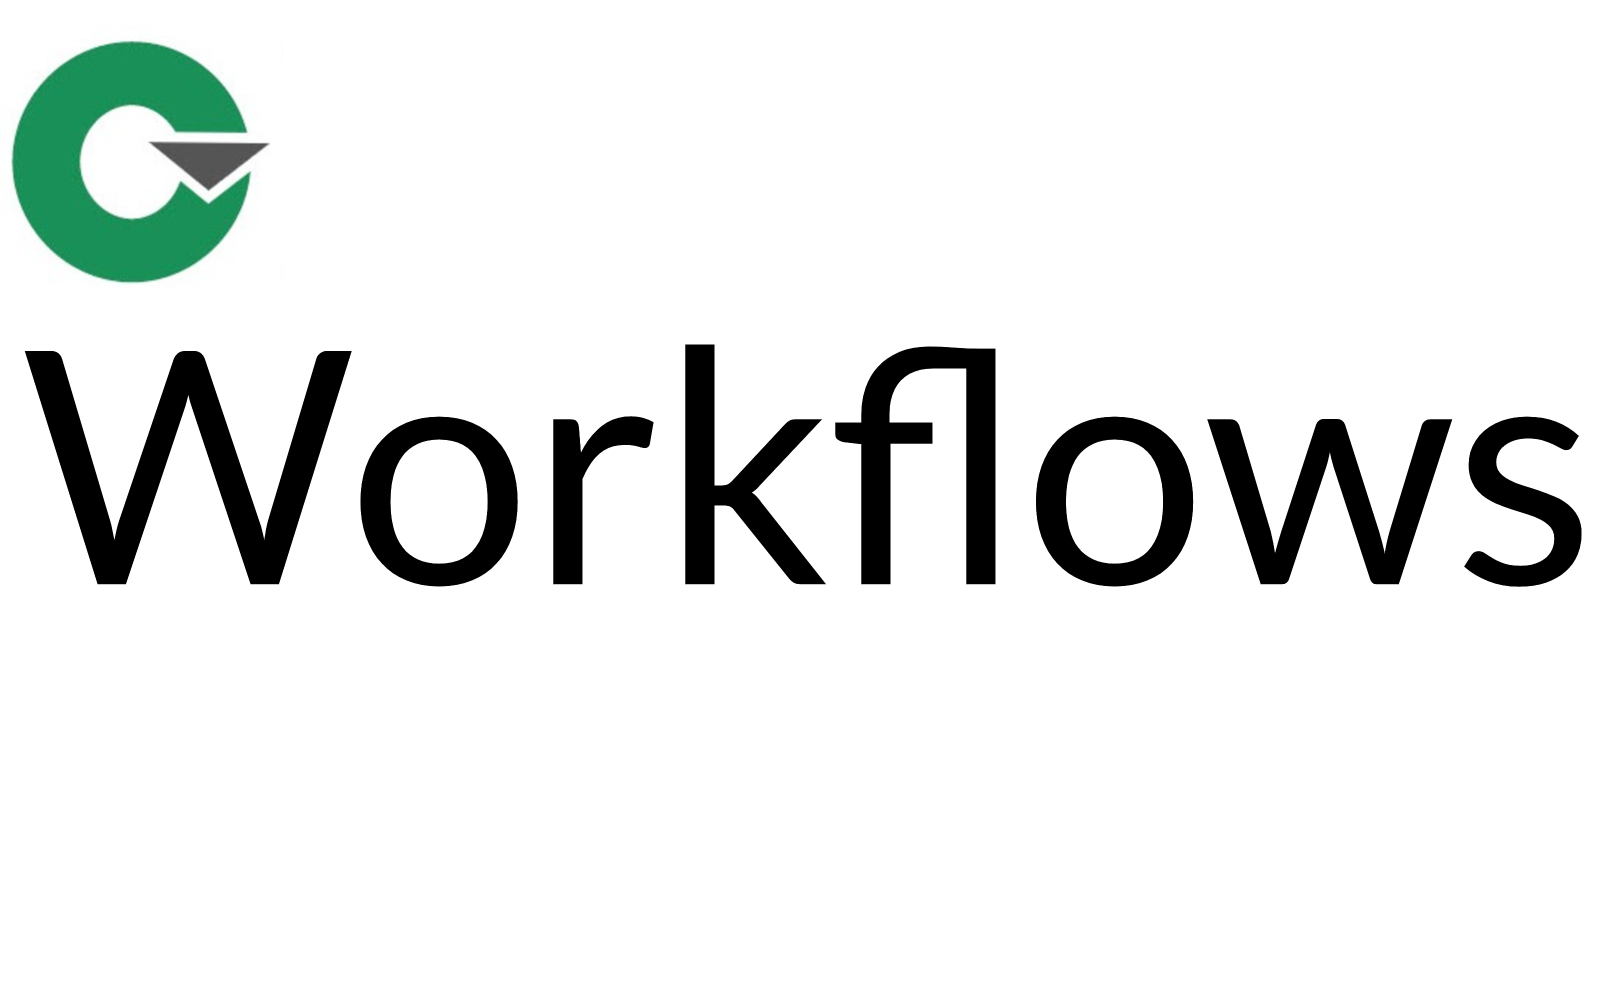 11 - Workflows